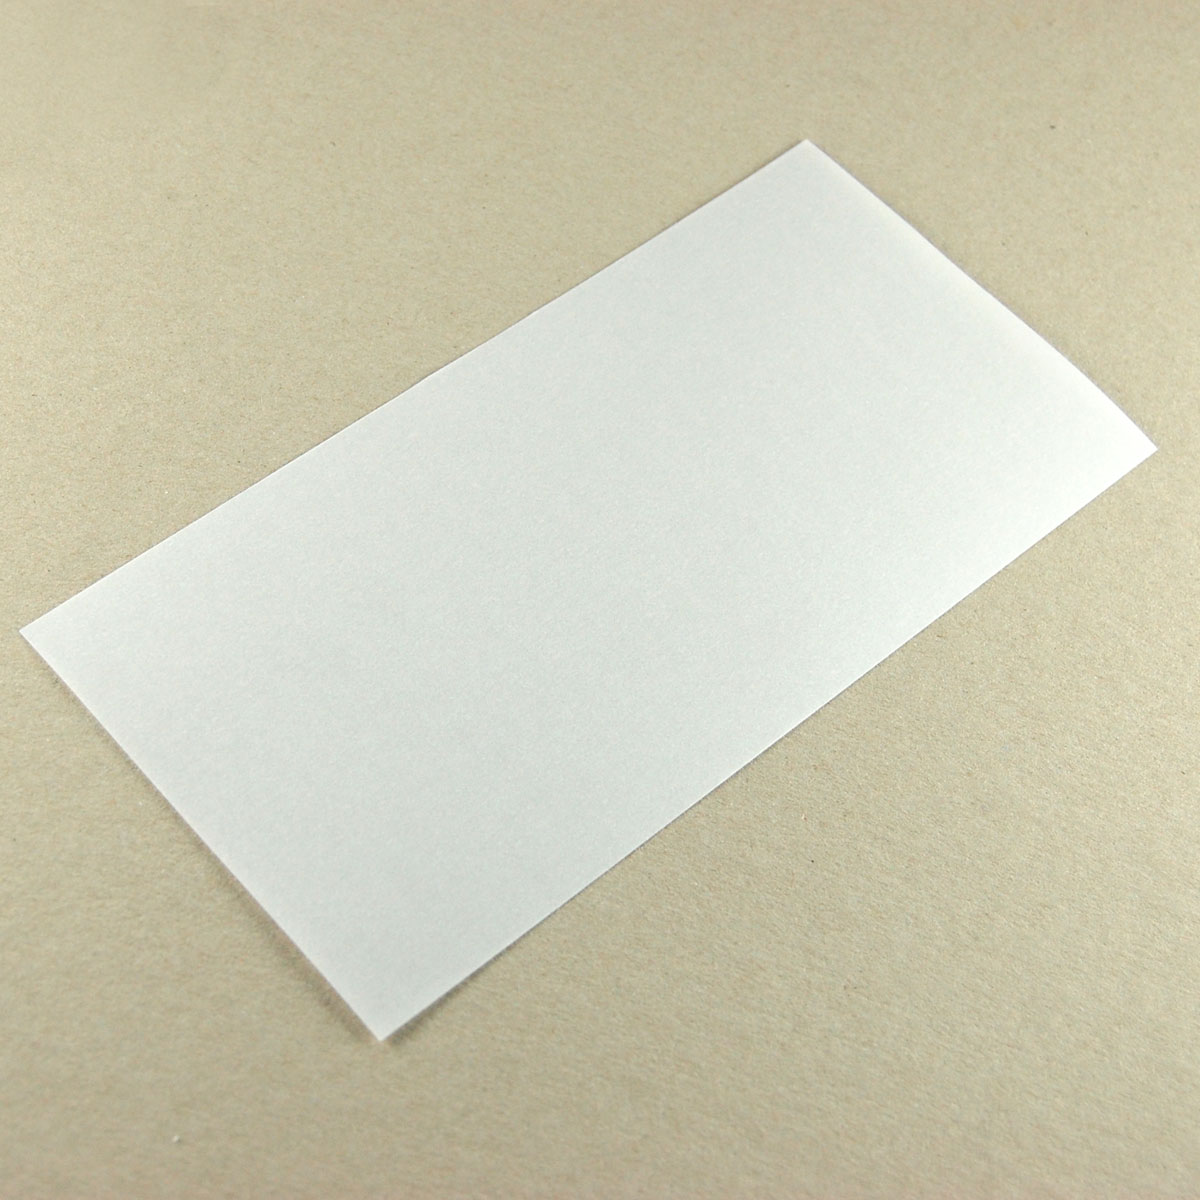 transparente Postkarten DIN lang, komplett unbedruckt, Karton 300 g/qm